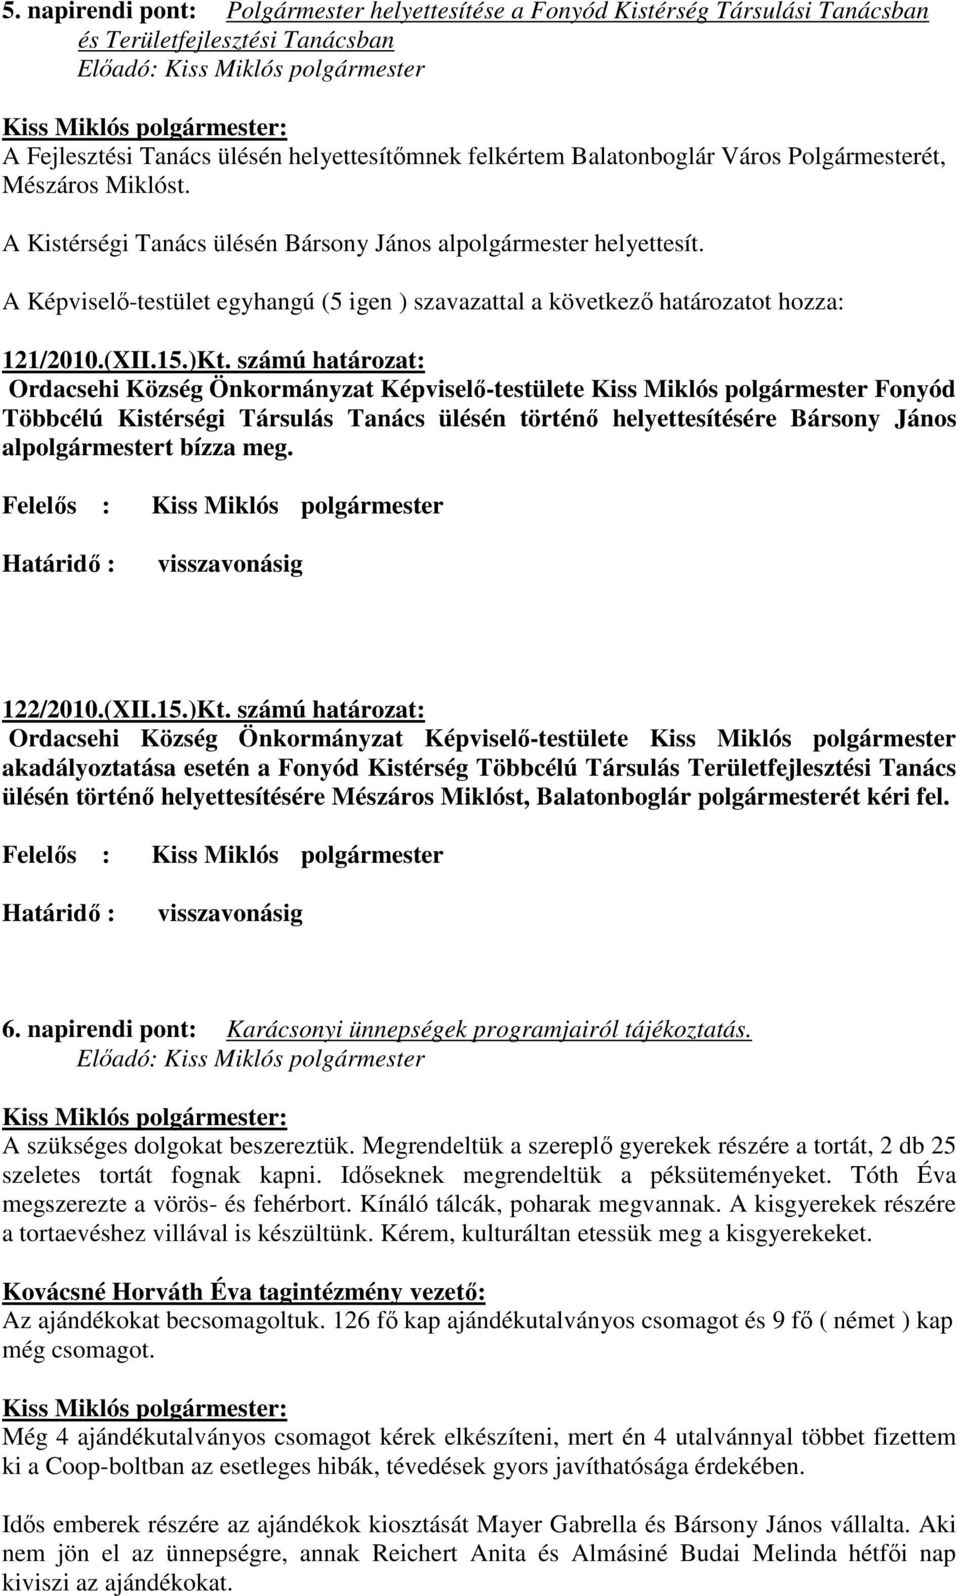 A Képviselı-testület egyhangú (5 igen ) szavazattal a következı határozatot hozza: 121/2010.(XII.15.)Kt.